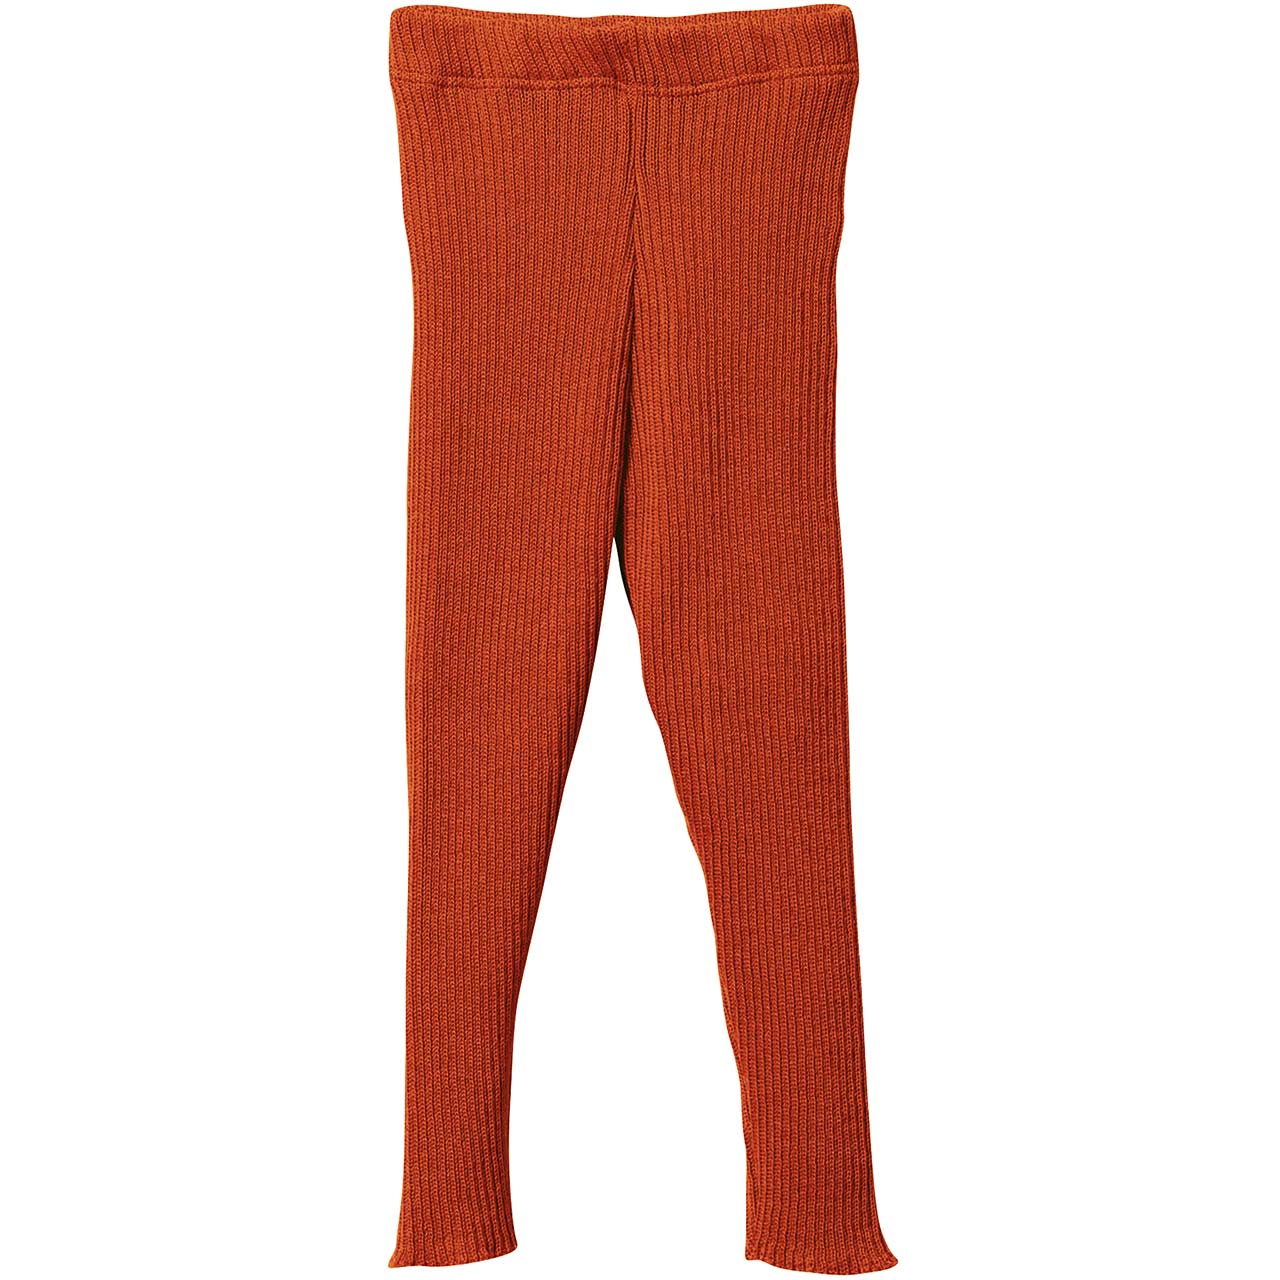 Woll Leggings orange warm und mitwachsend